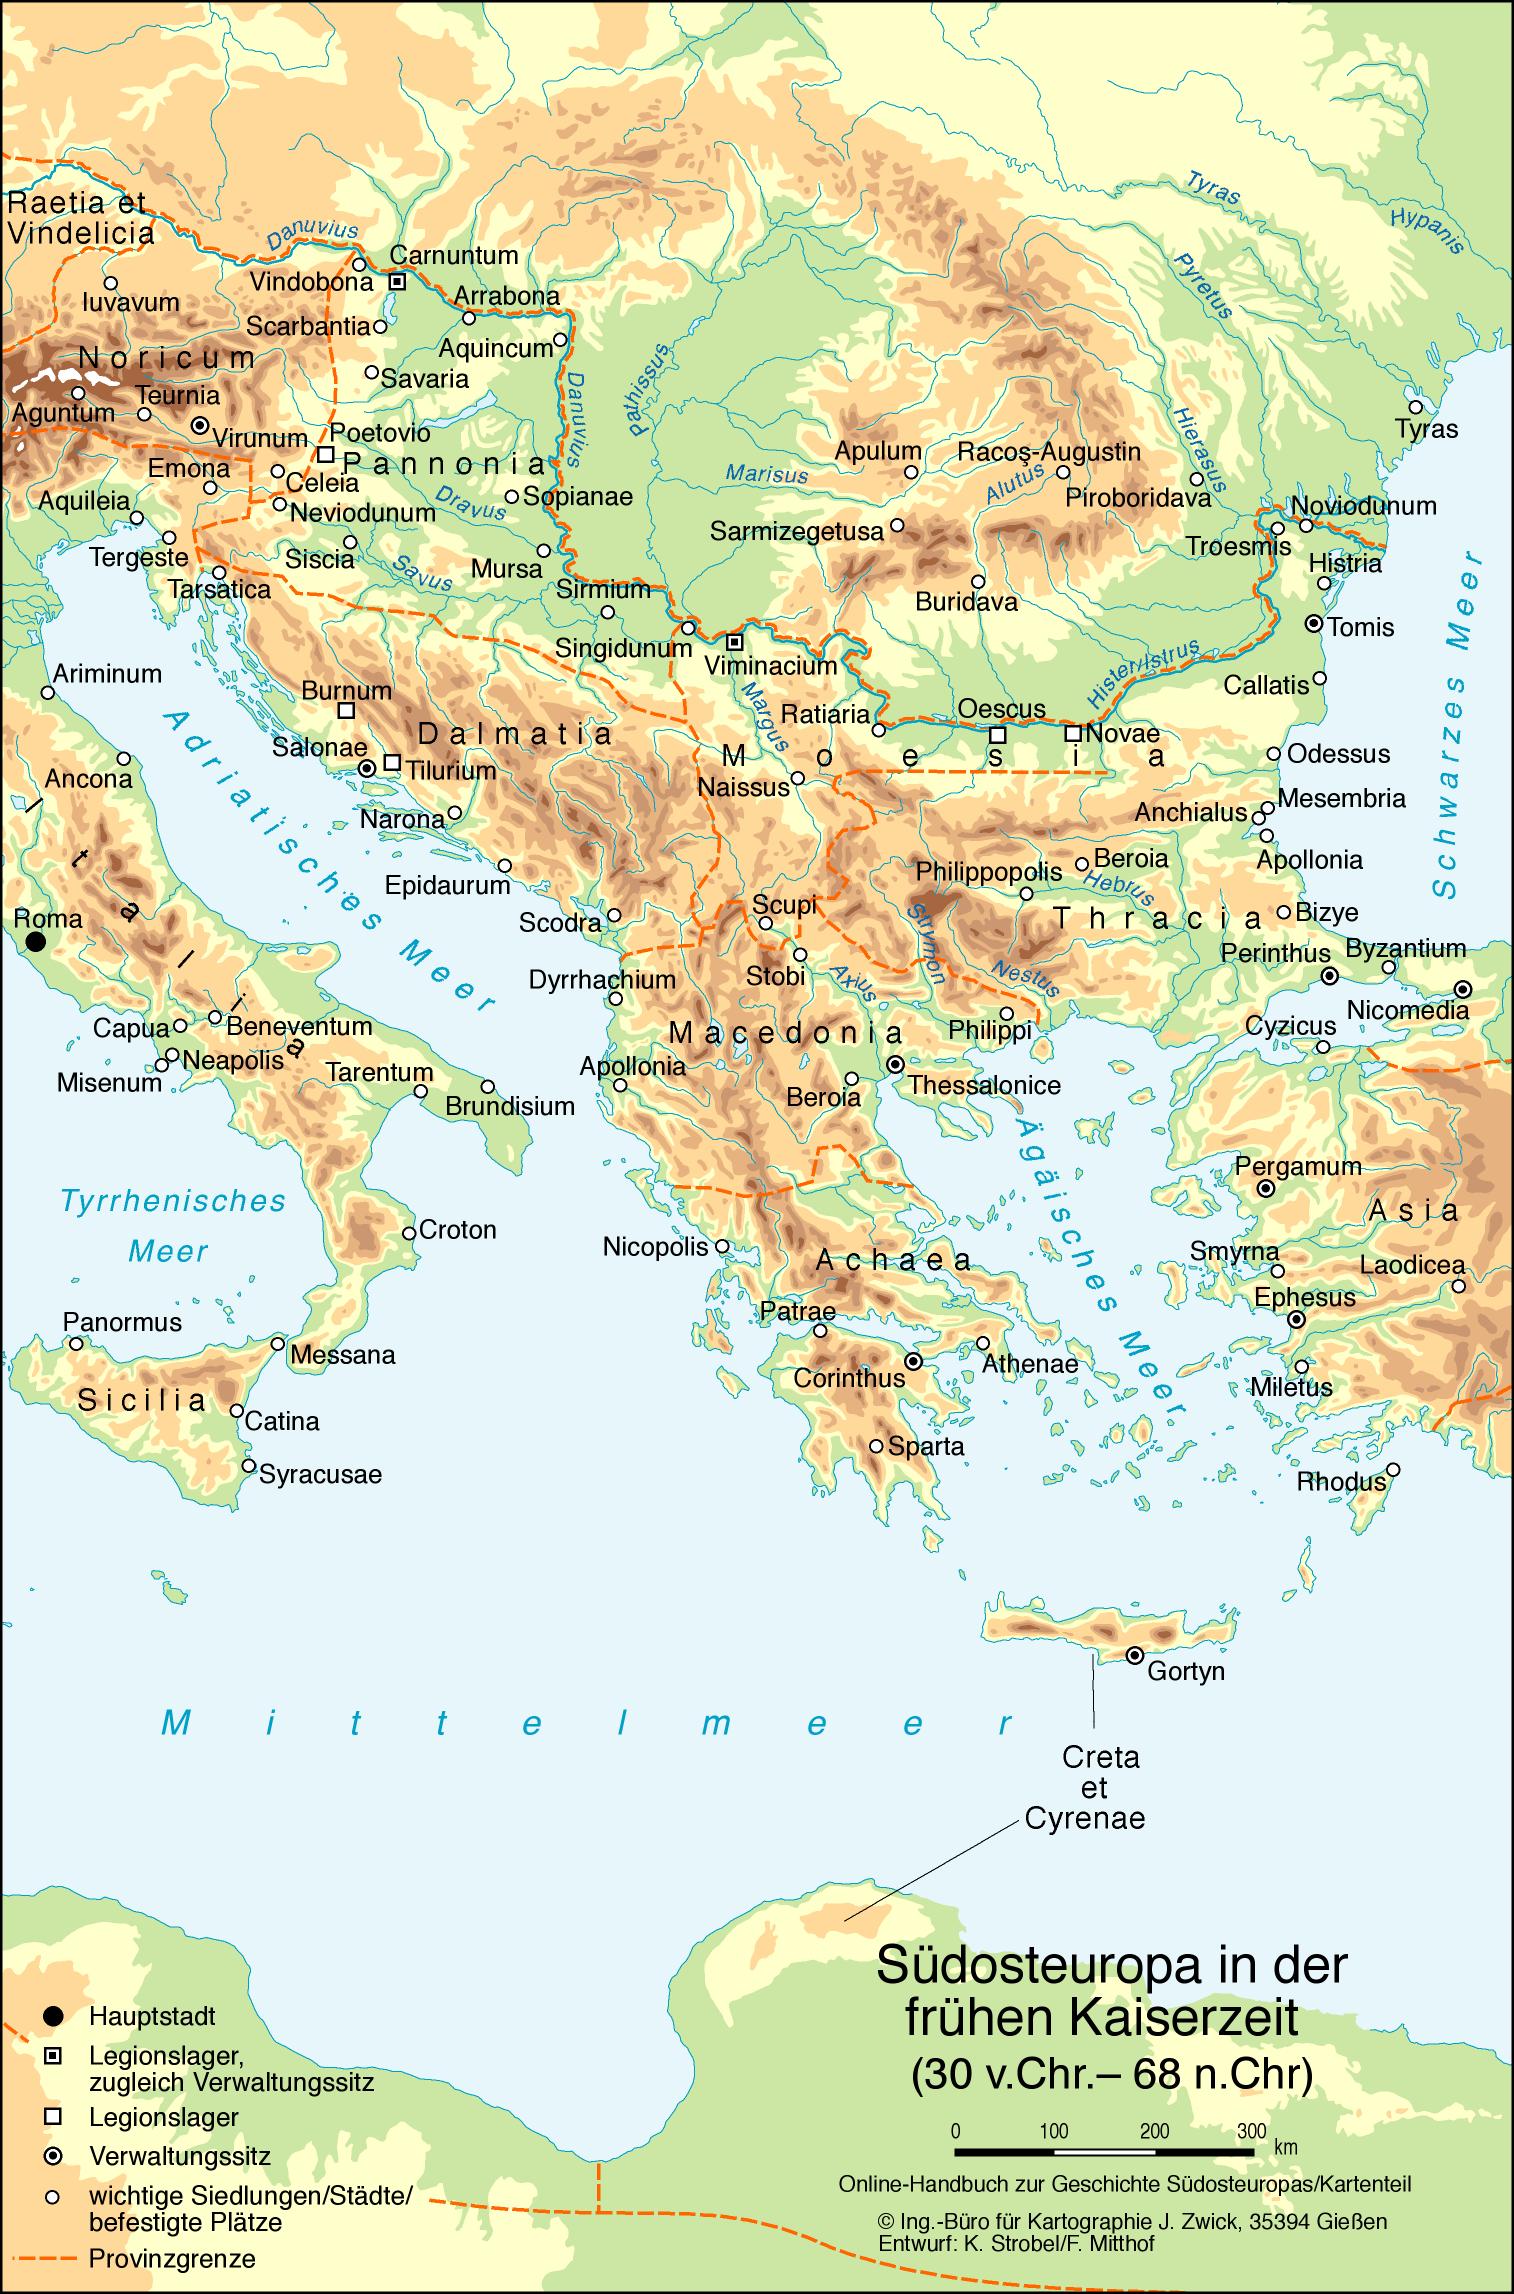 Südosteuropa in der frühen Kaiserzeit (30 v. Chr. – 68 n. Chr.)